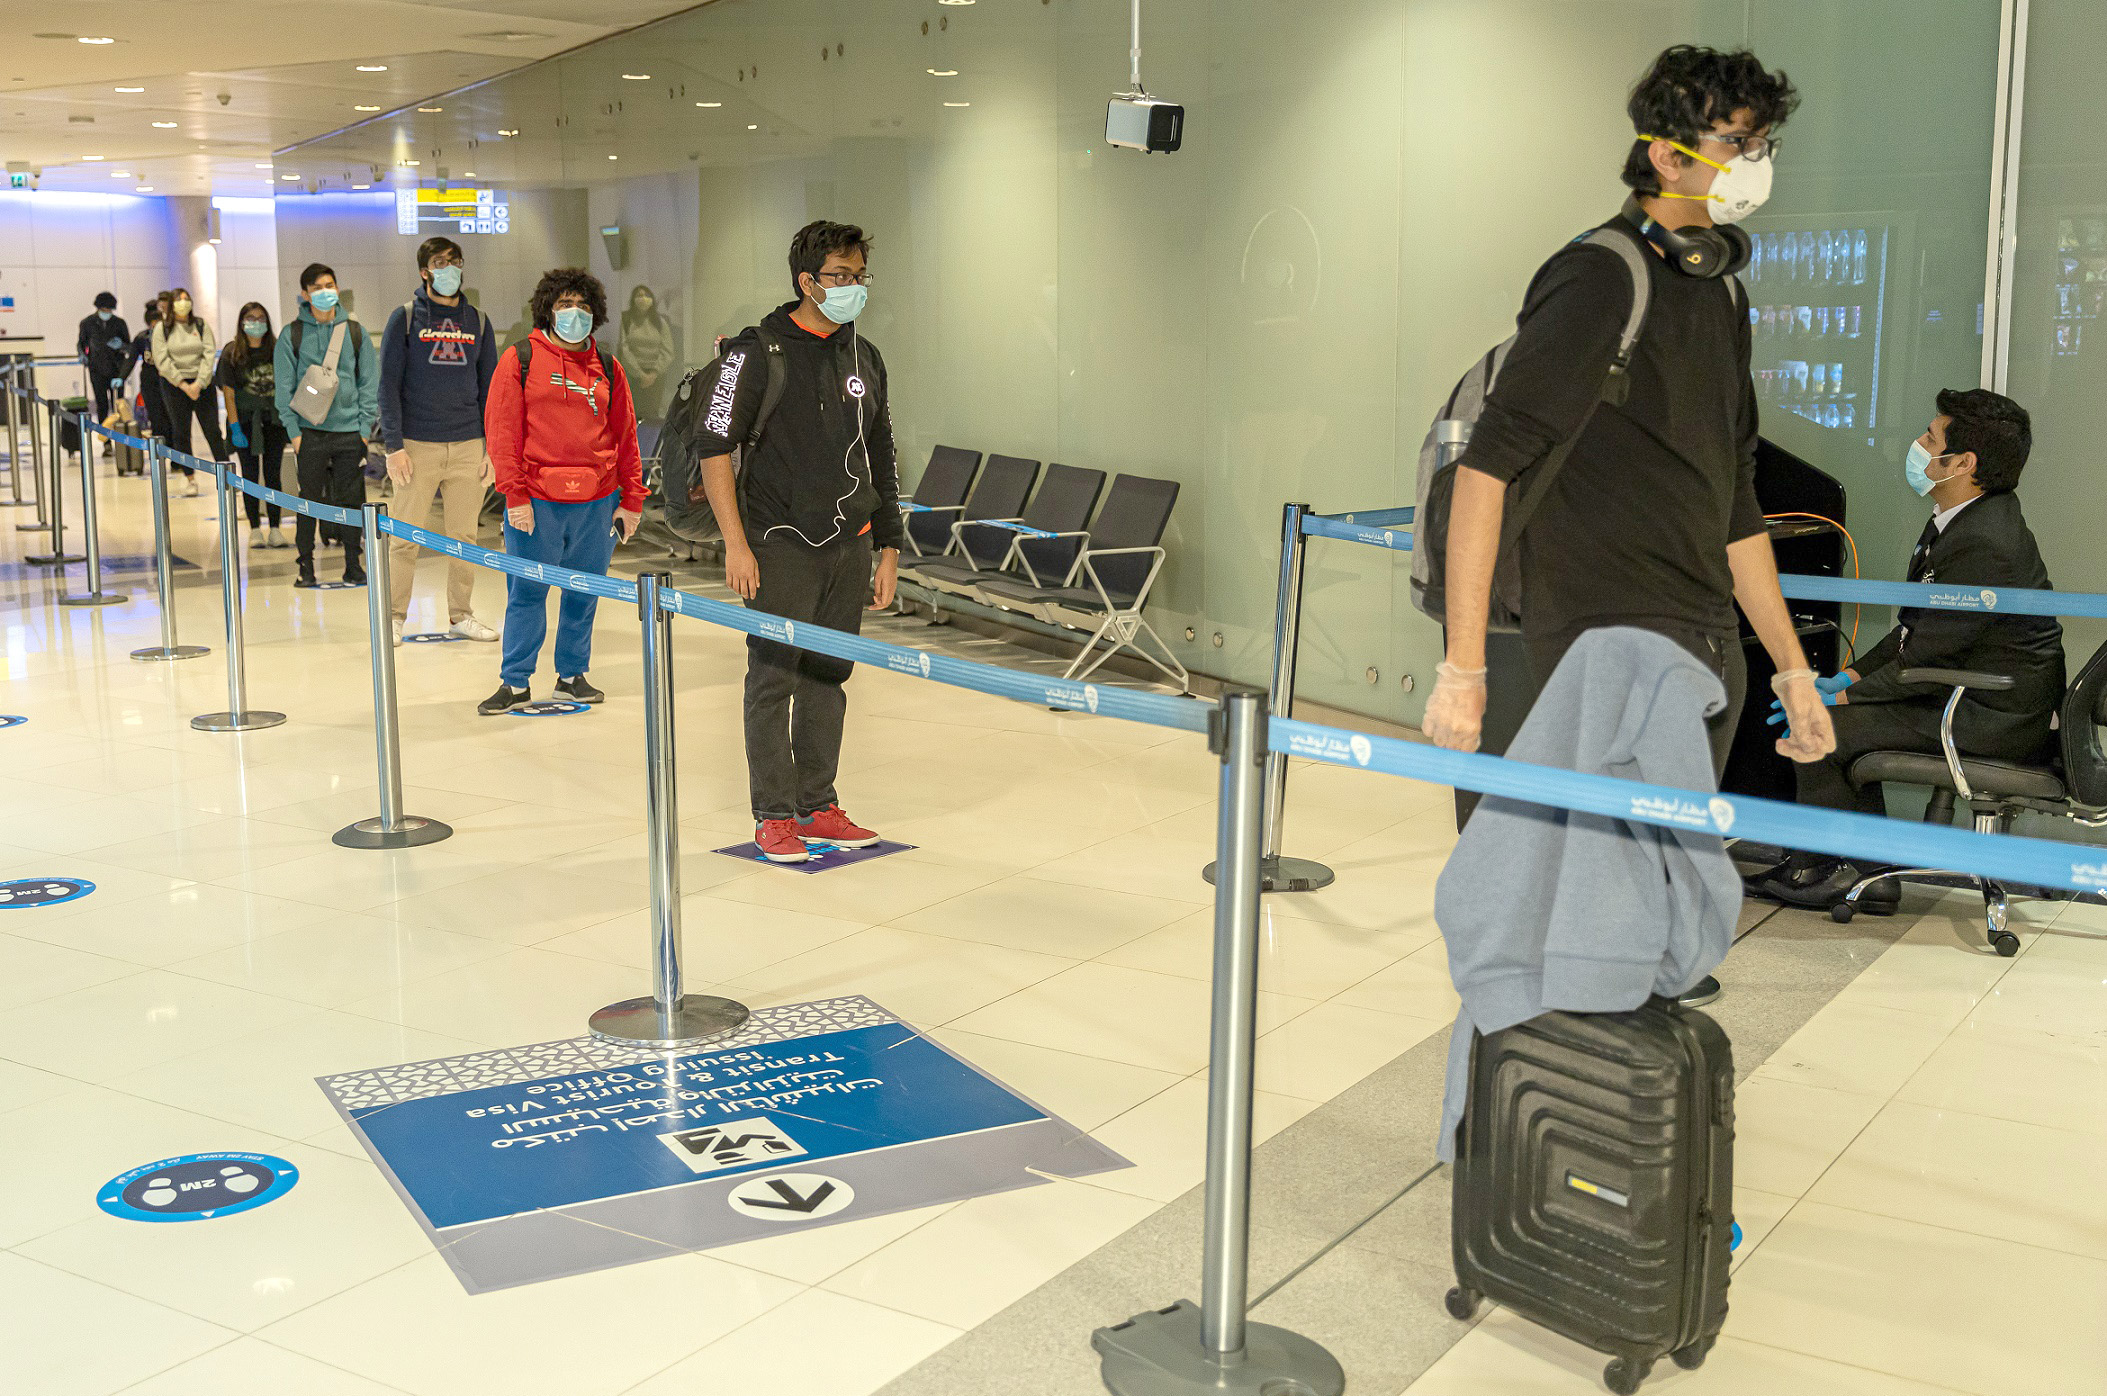 الزام المسافرين بارتداء اساور طبية عند الوصول لمطار ابو ظبي